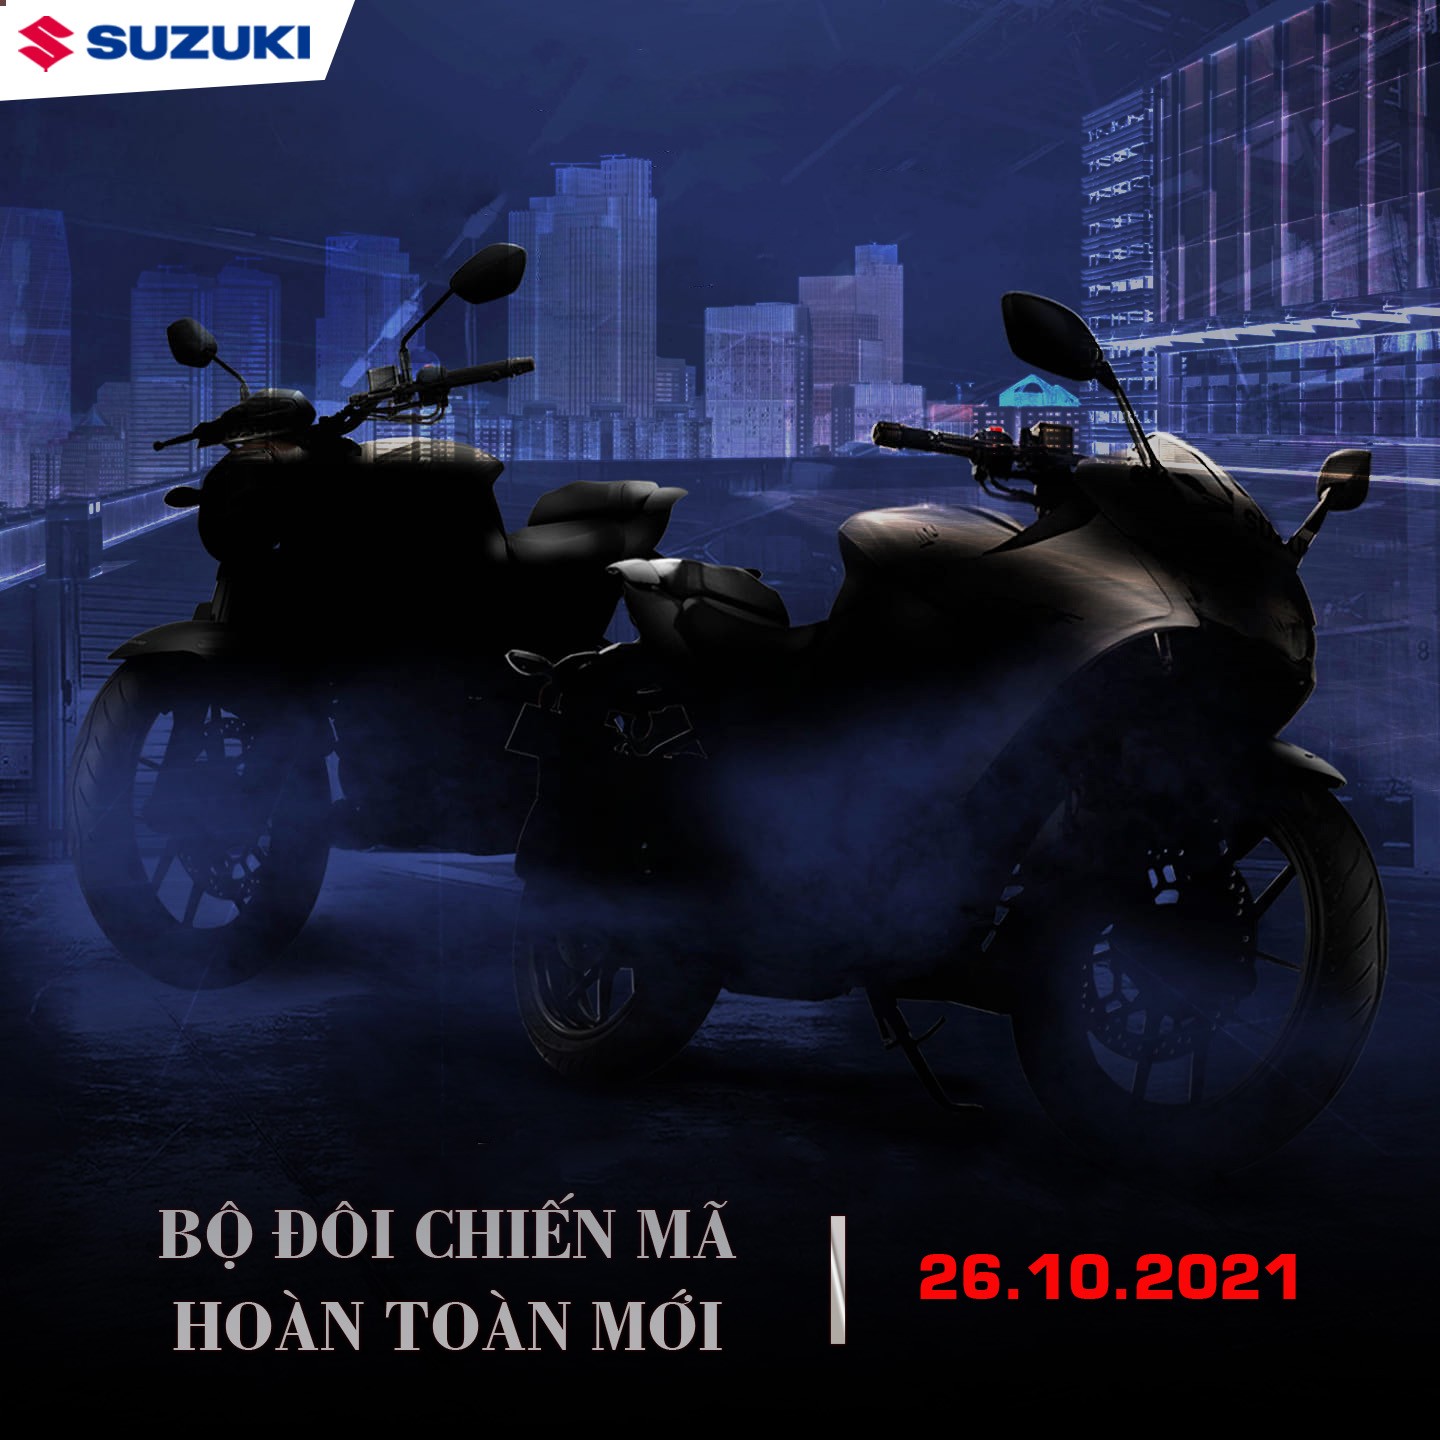 Hình ảnh Suzuki Việt Nam đăng tải kèm dòng trạng thái “Cùng đón chờ sự xuất hiện của bộ đôi siêu phẩm”